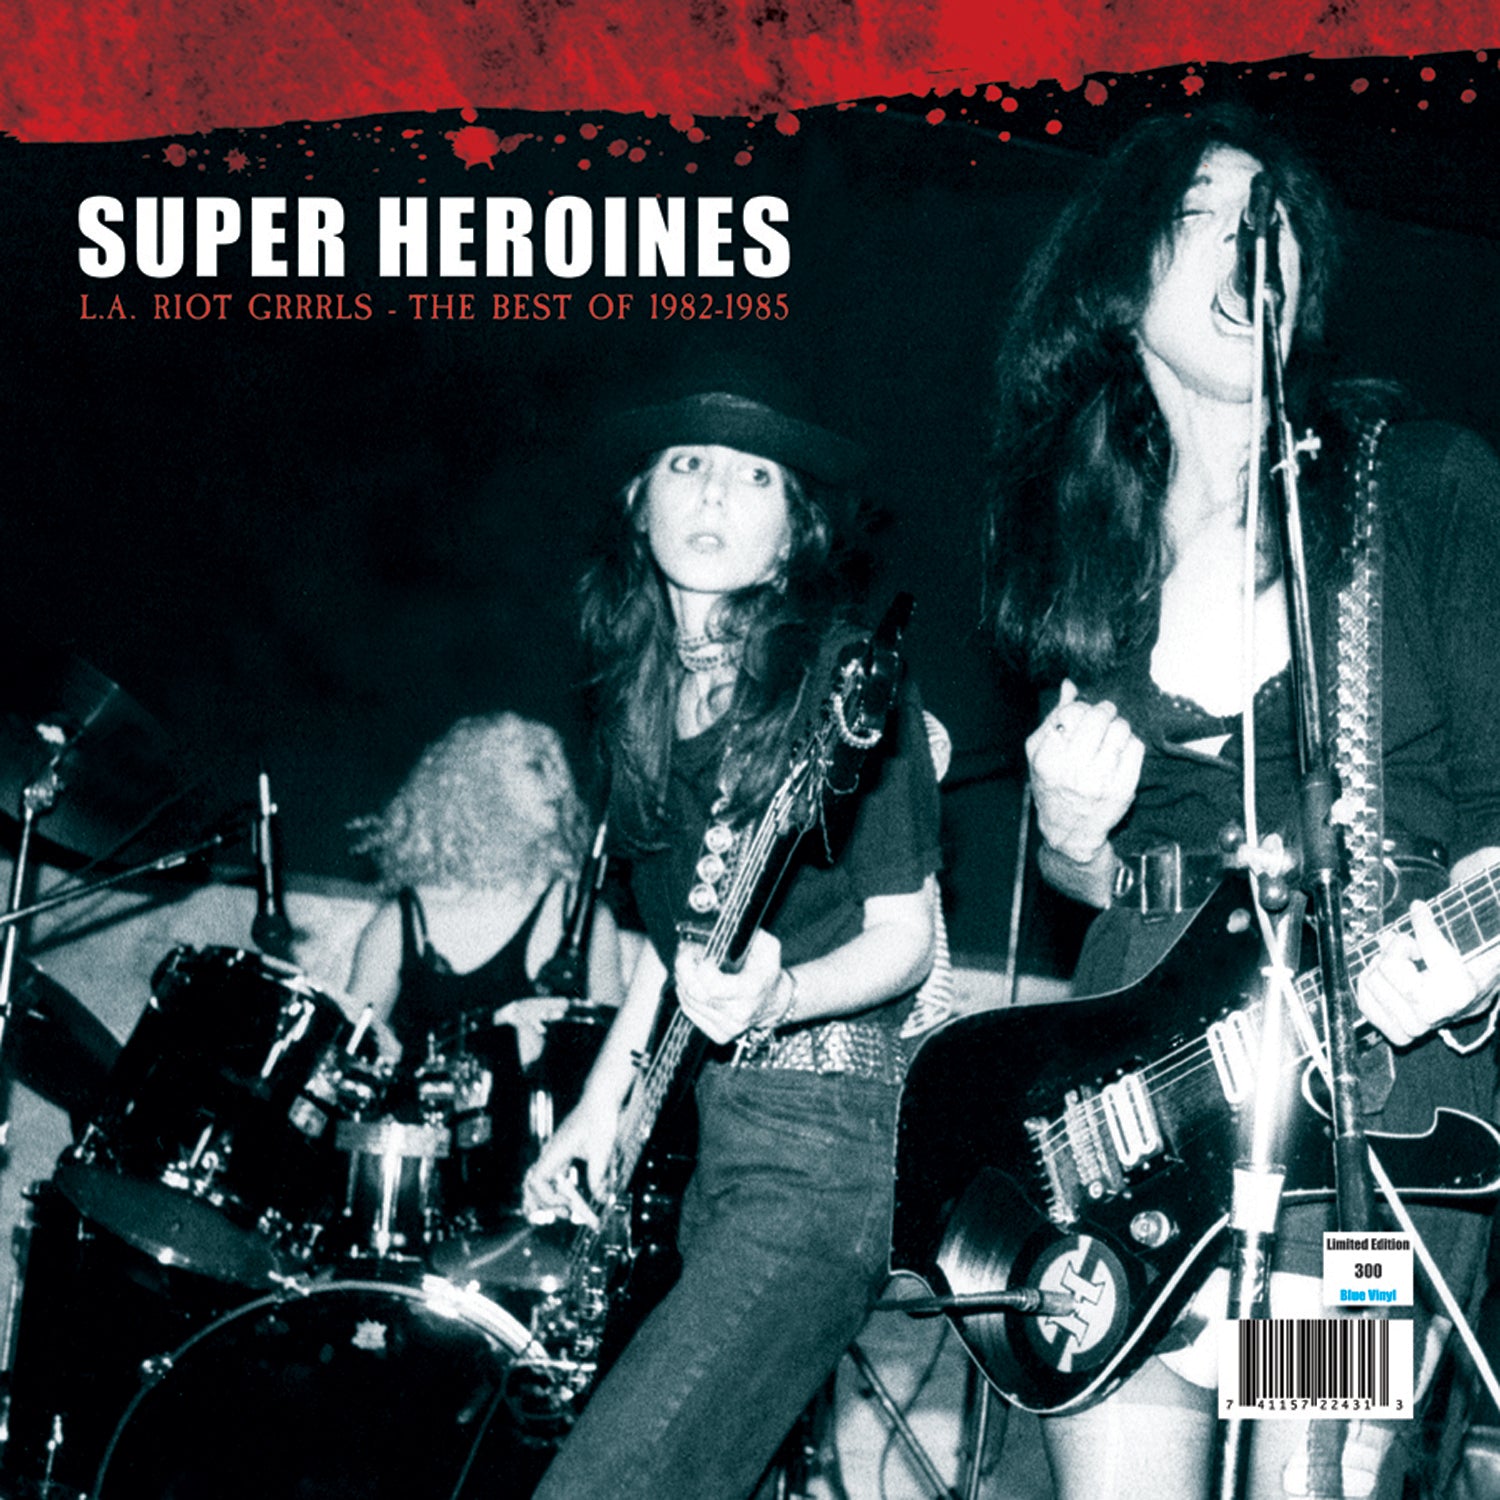 Super Heroines - L.A. Riot Grrrls - Best of 82-85 (LP)